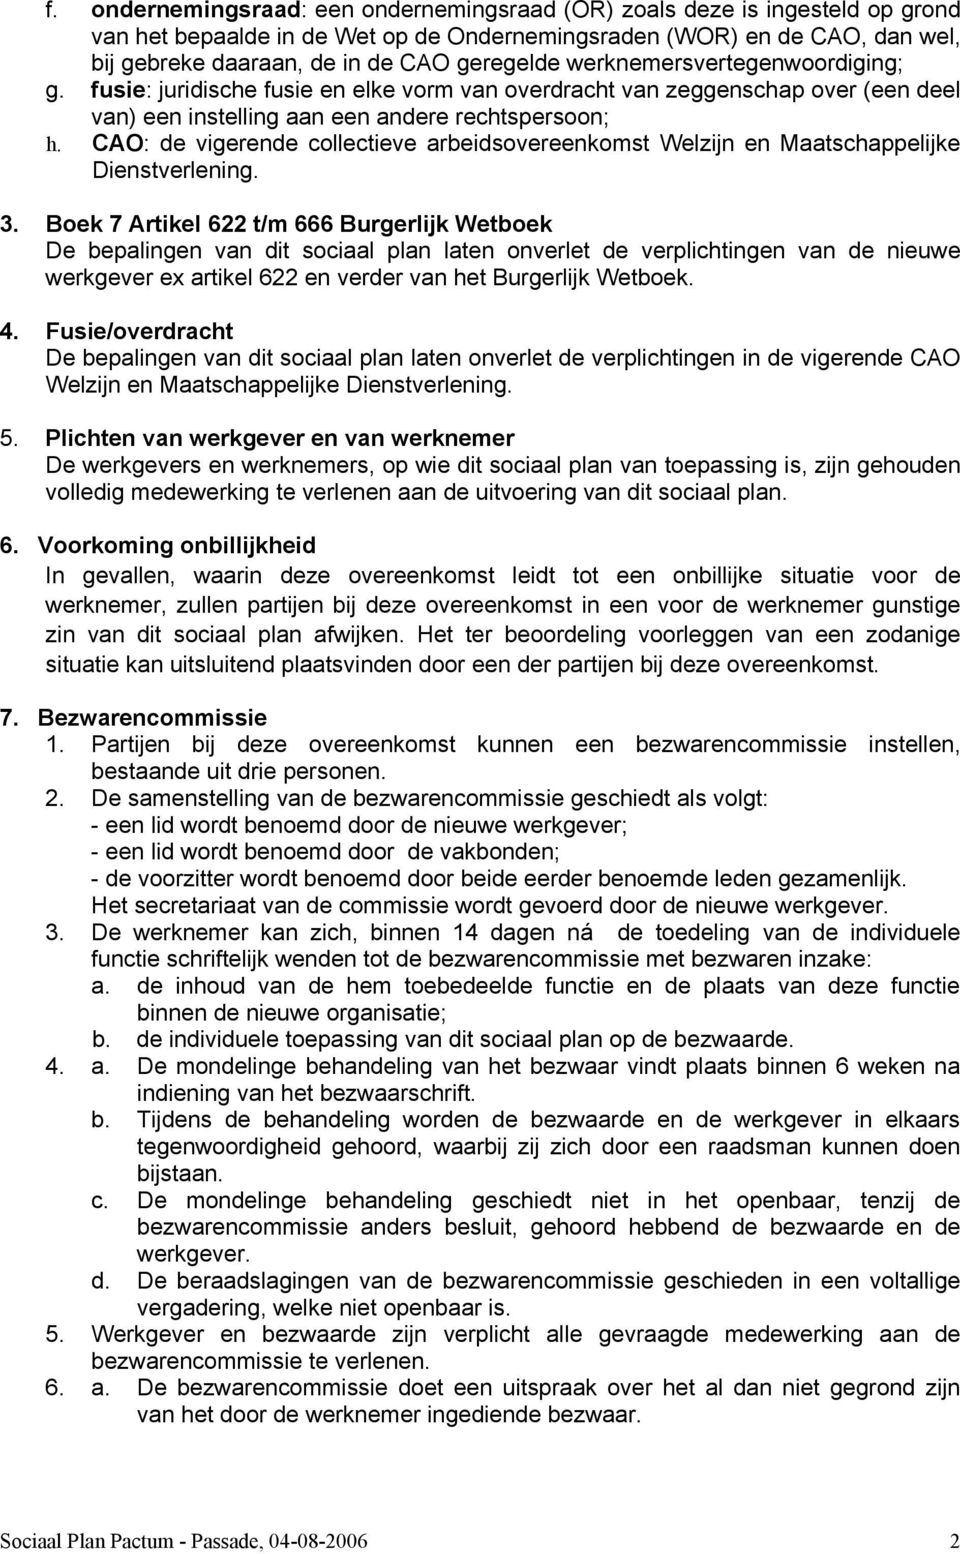 CAO: de vigerende collectieve arbeidsovereenkomst Welzijn en Maatschappelijke Dienstverlening. 3.